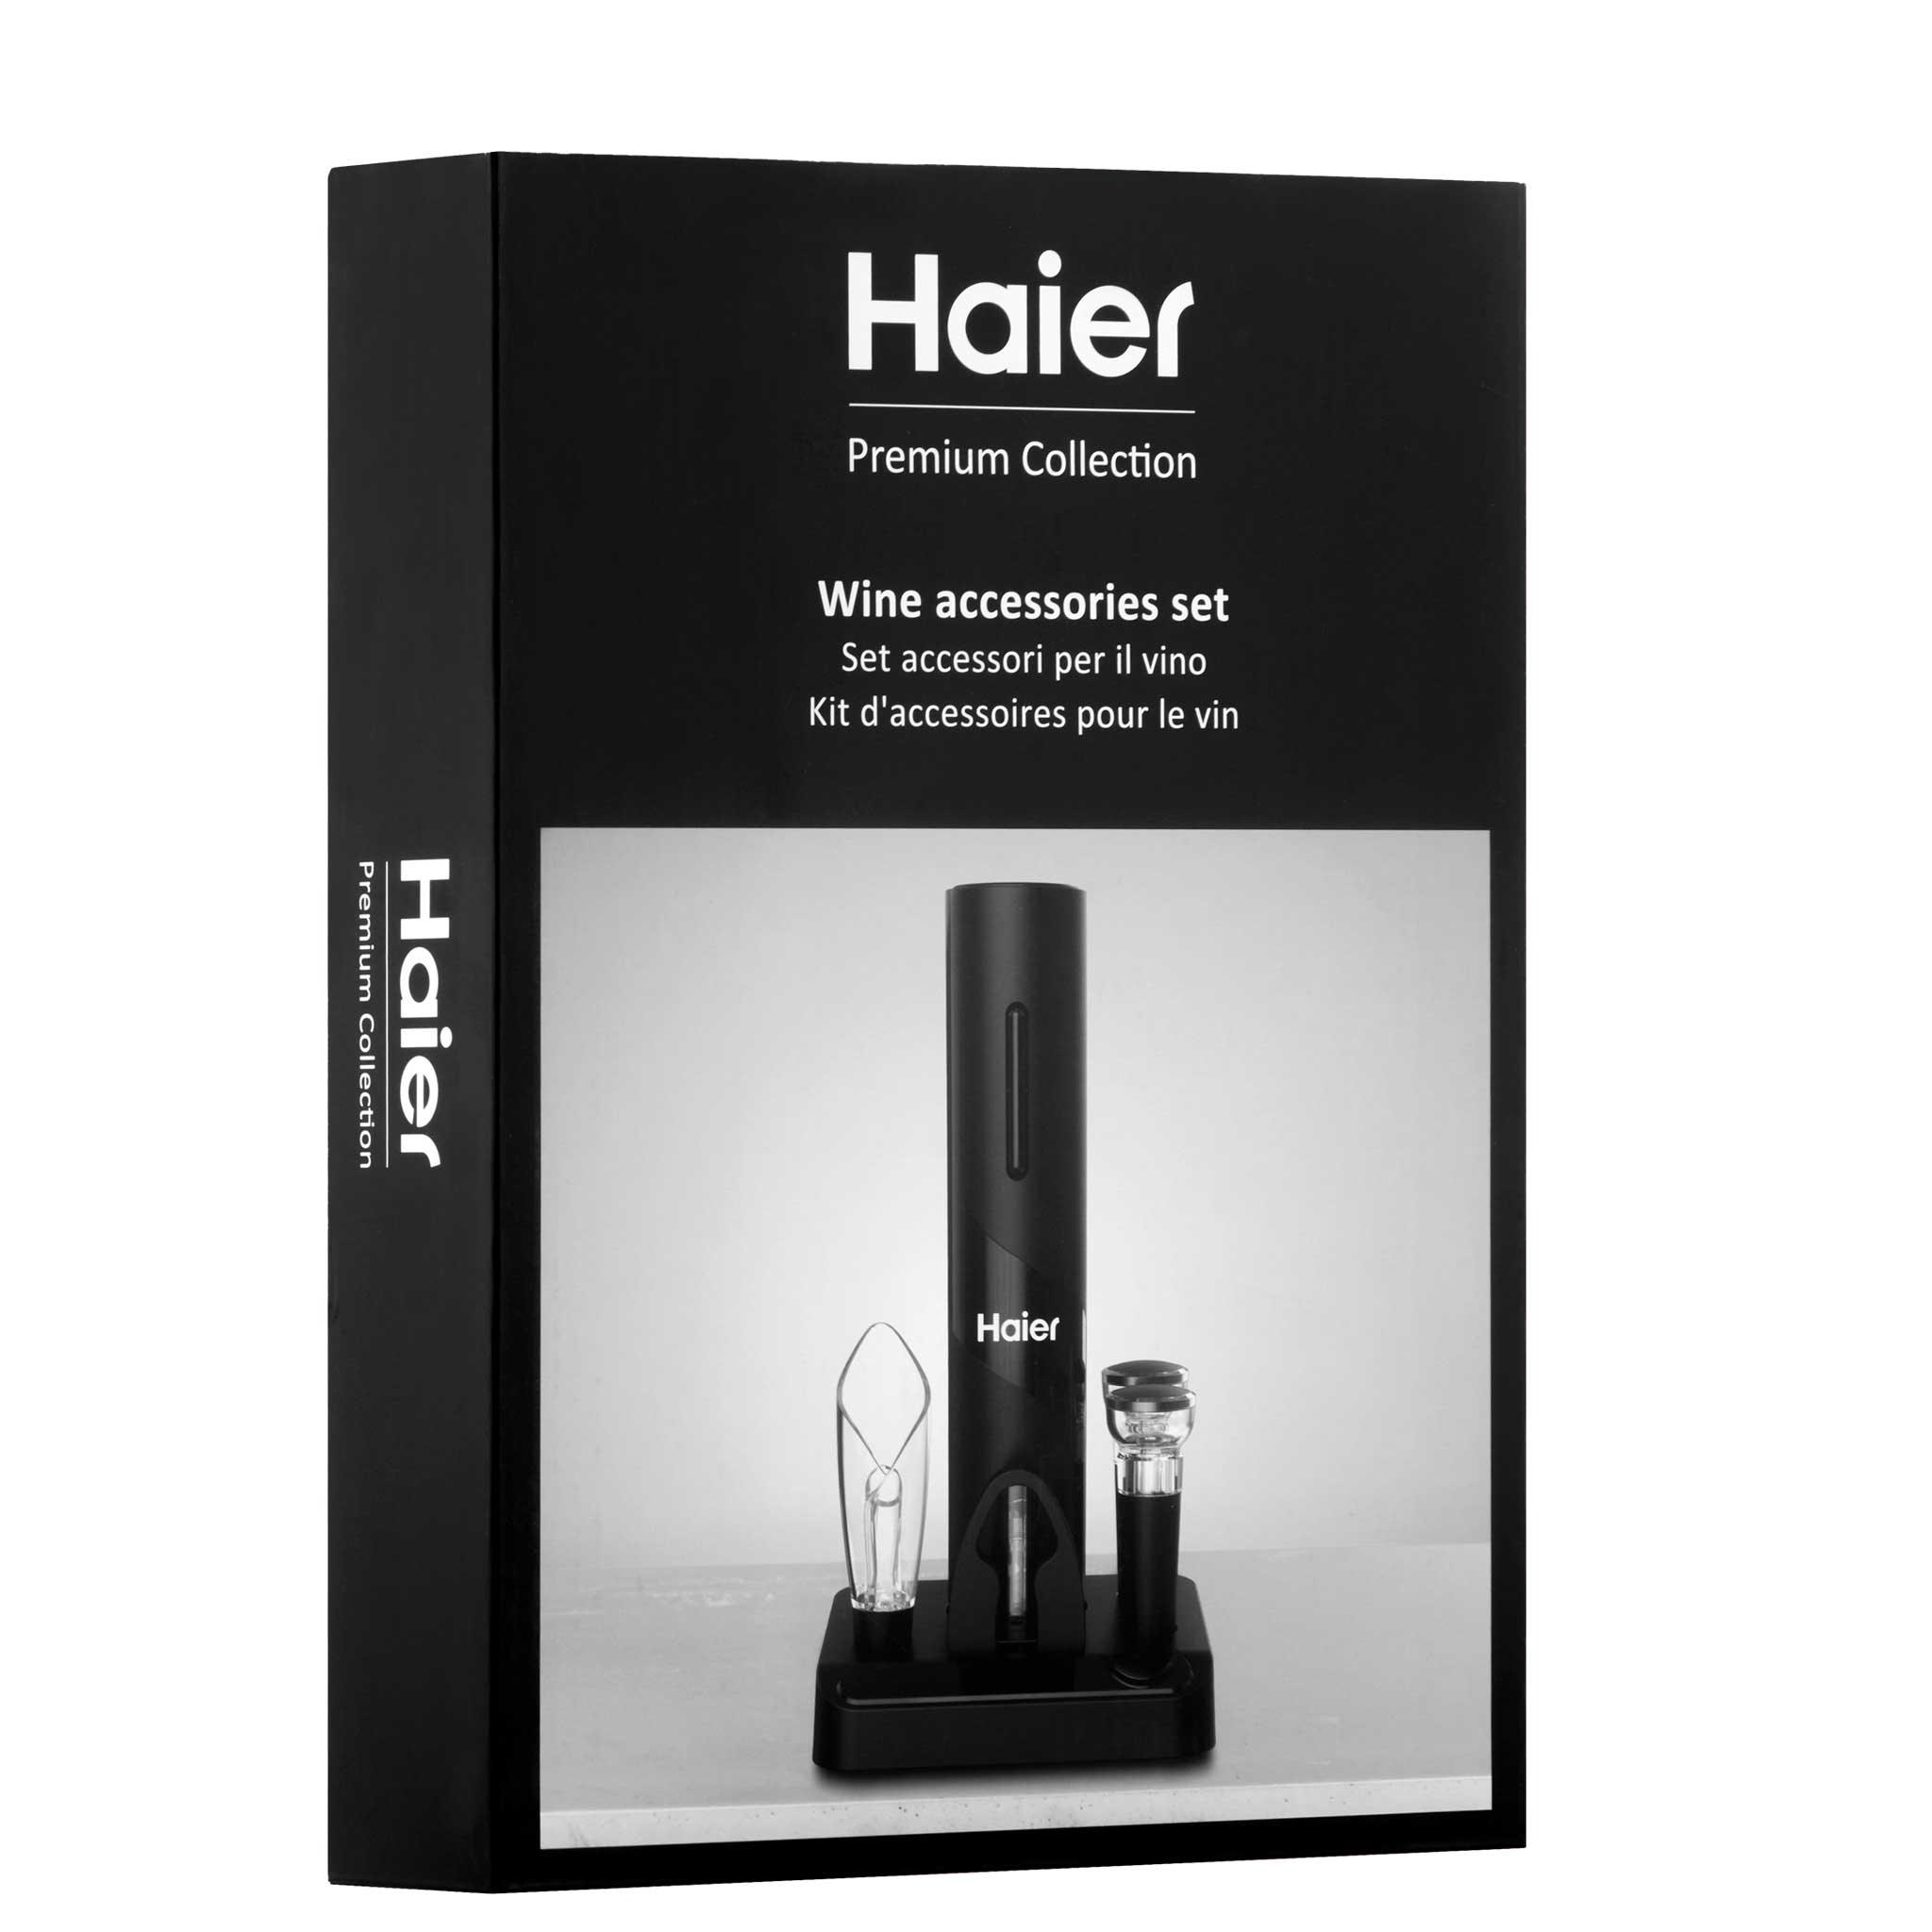 Haier 5-in-1 battery powered eletric wine bottle opener kit